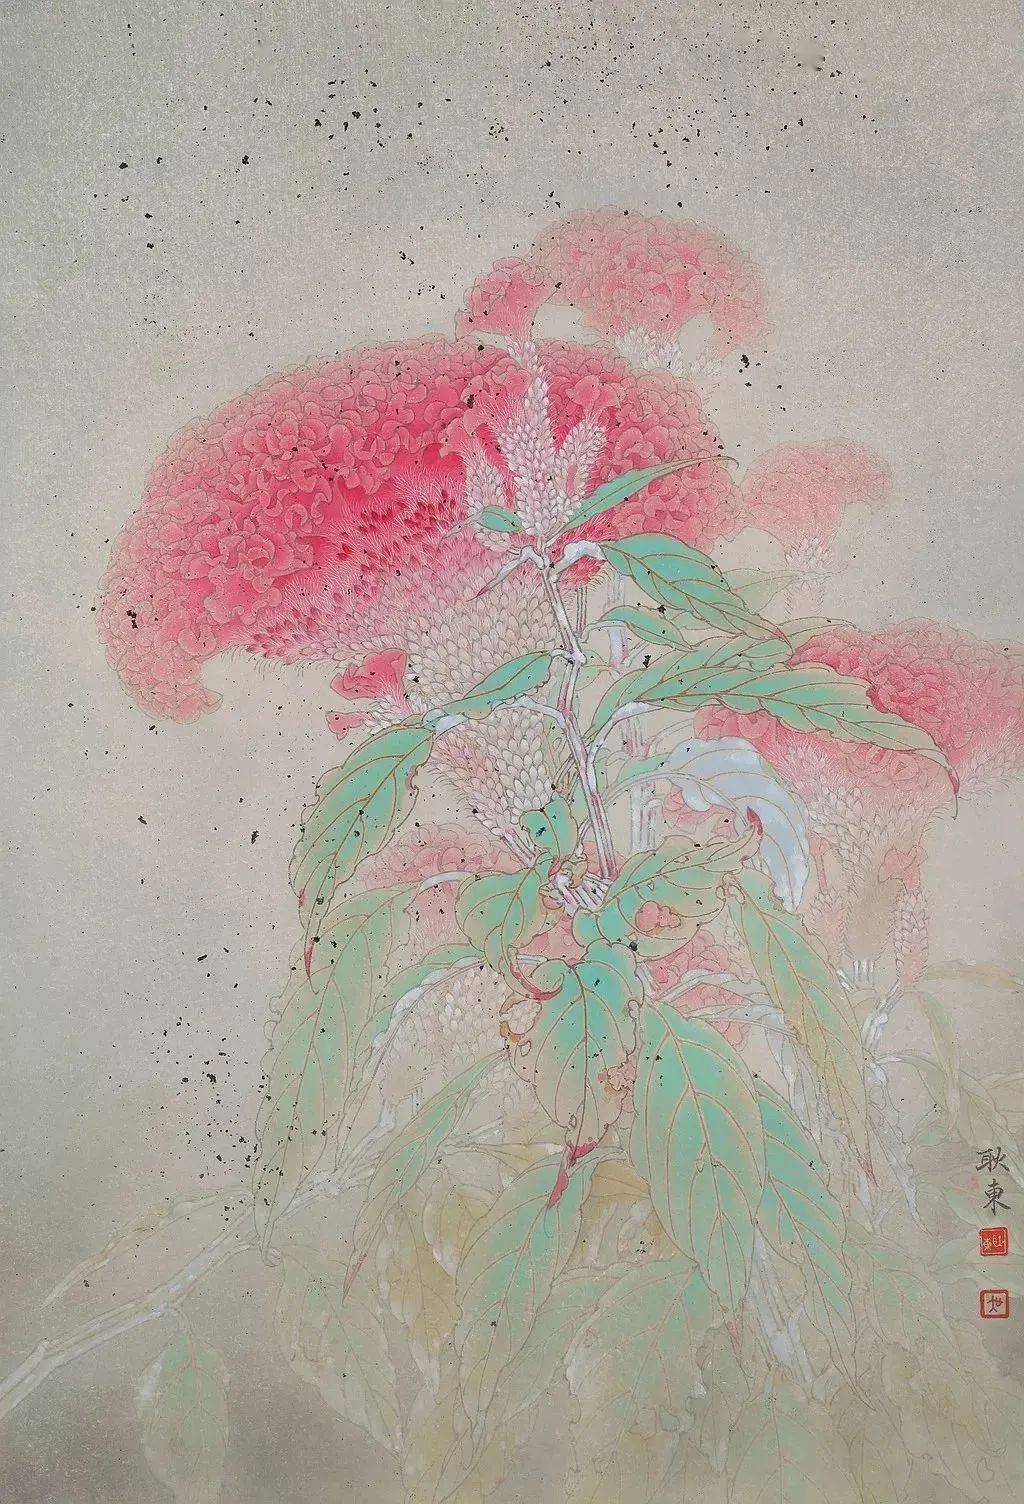 【艺术世界】吴耿东:我喜绘鸡冠花,能看出别人看不到的美_工笔画